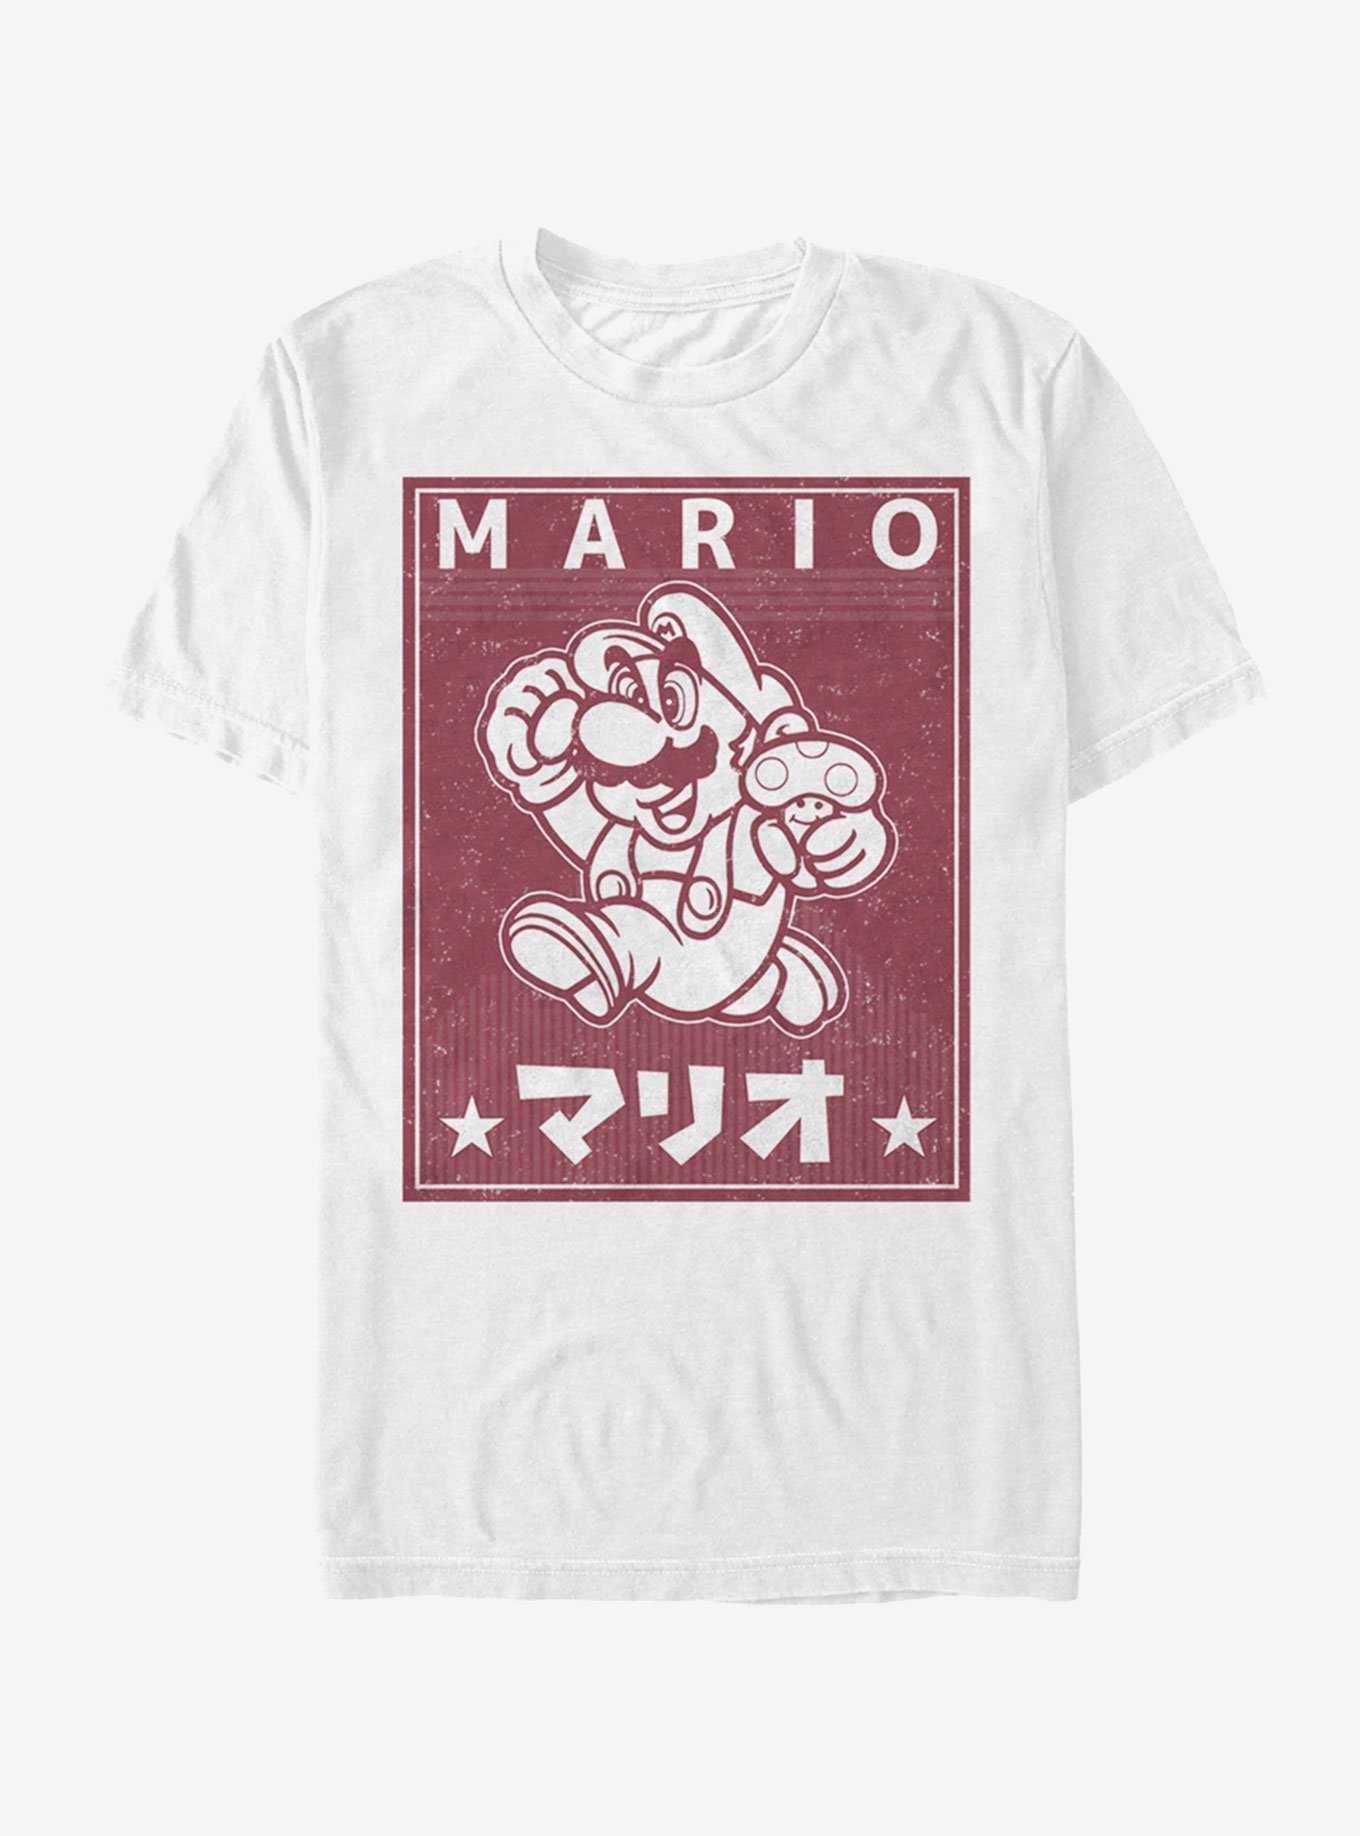 Nintendo Super Mario Japanese Text T-Shirt, , hi-res